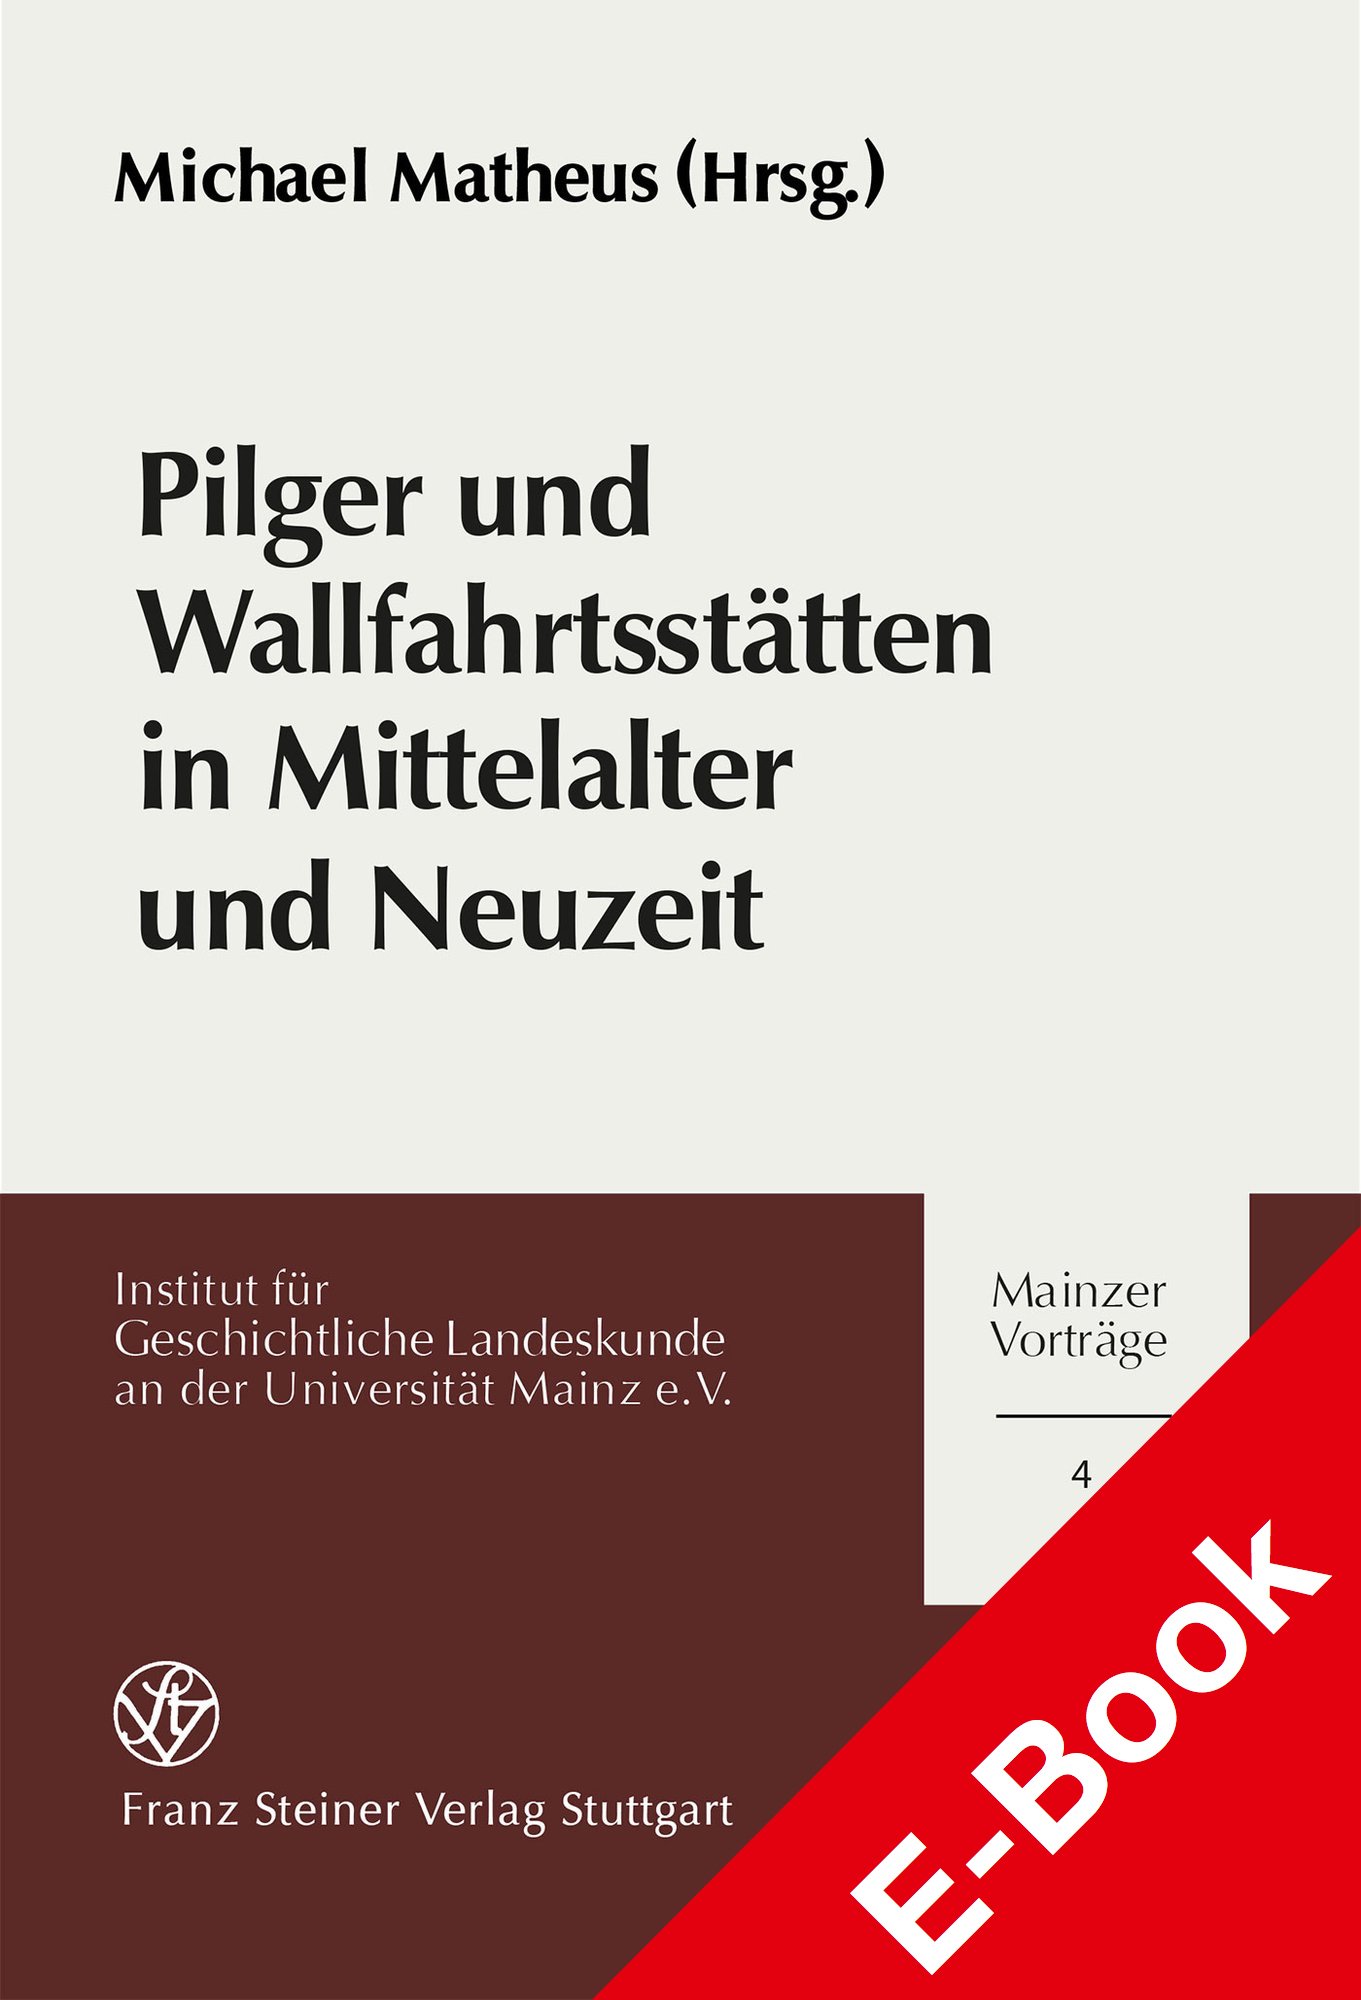 Pilger und Wallfahrtsstätten in Mittelalter und Neuzeit